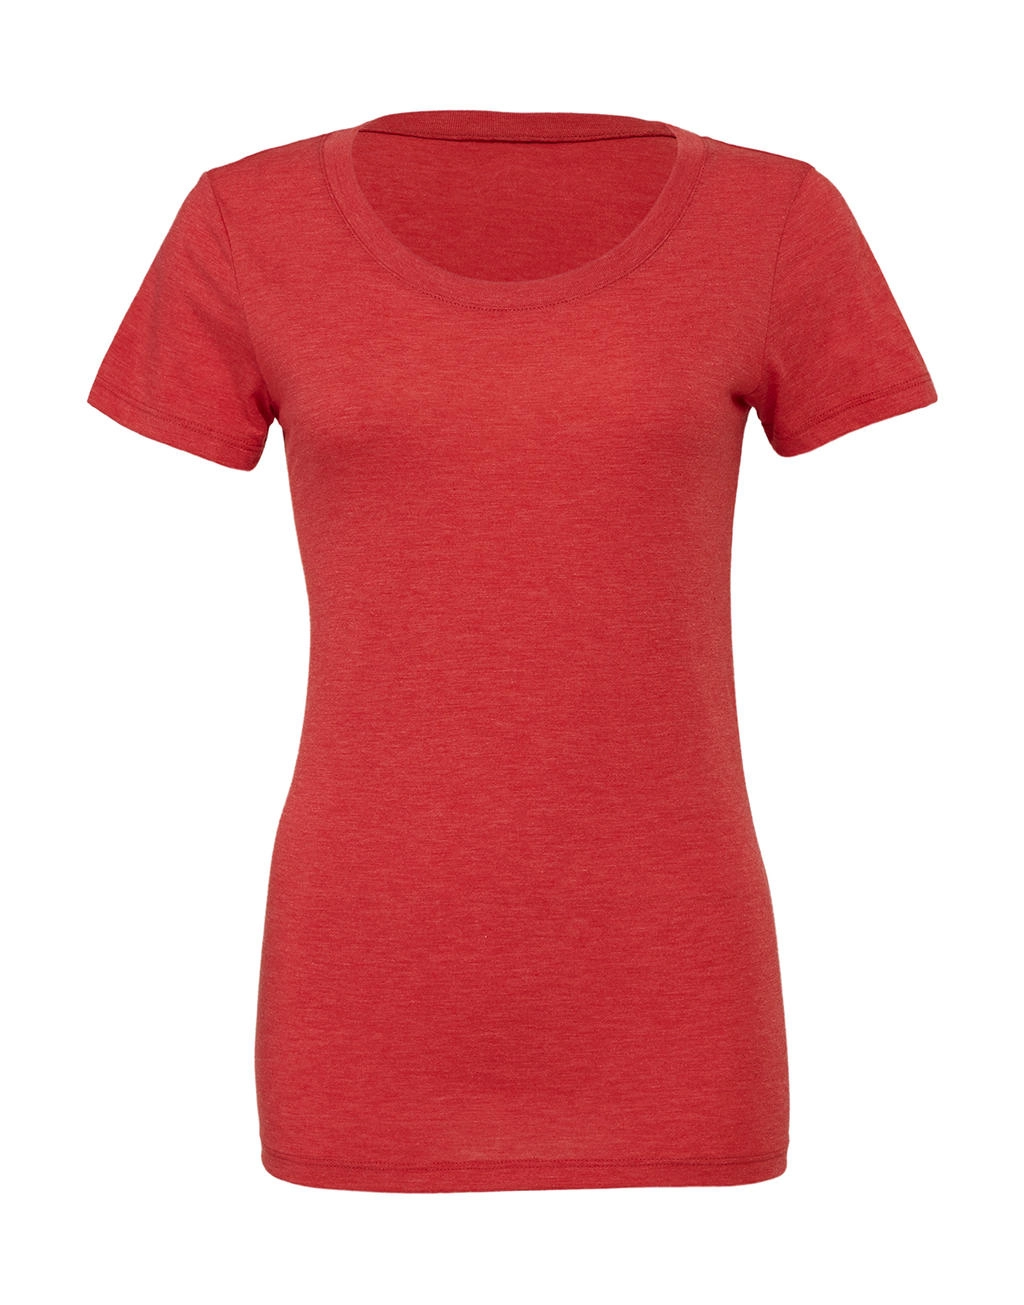 Triblend Crew Neck T-Shirt zum Besticken und Bedrucken in der Farbe Red Triblend mit Ihren Logo, Schriftzug oder Motiv.